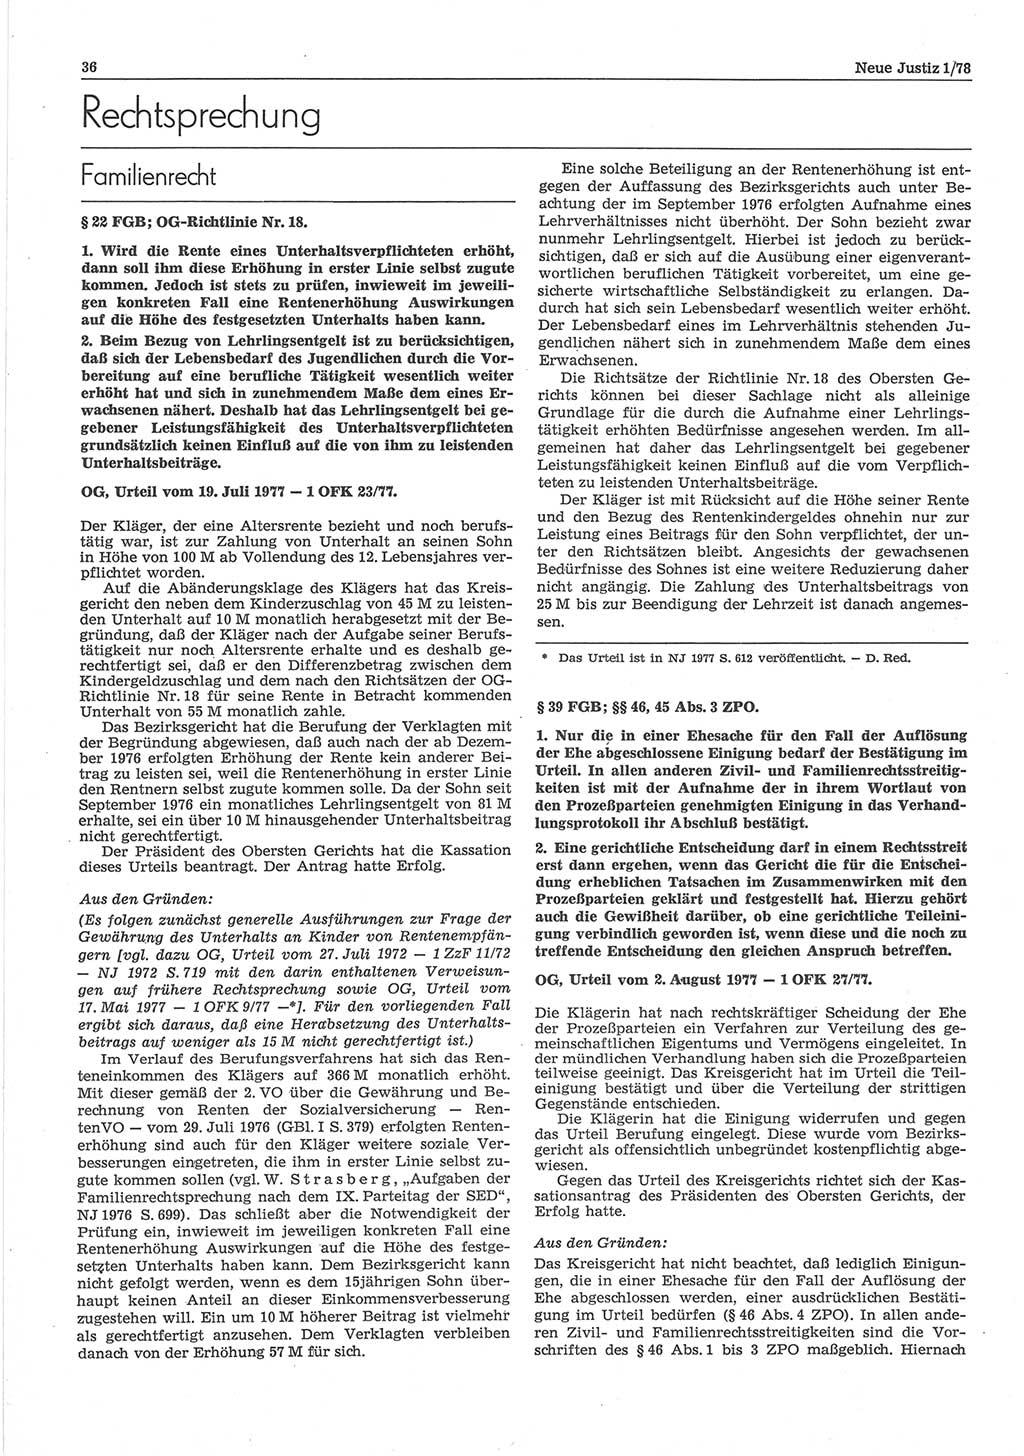 Neue Justiz (NJ), Zeitschrift für sozialistisches Recht und Gesetzlichkeit [Deutsche Demokratische Republik (DDR)], 32. Jahrgang 1978, Seite 36 (NJ DDR 1978, S. 36)